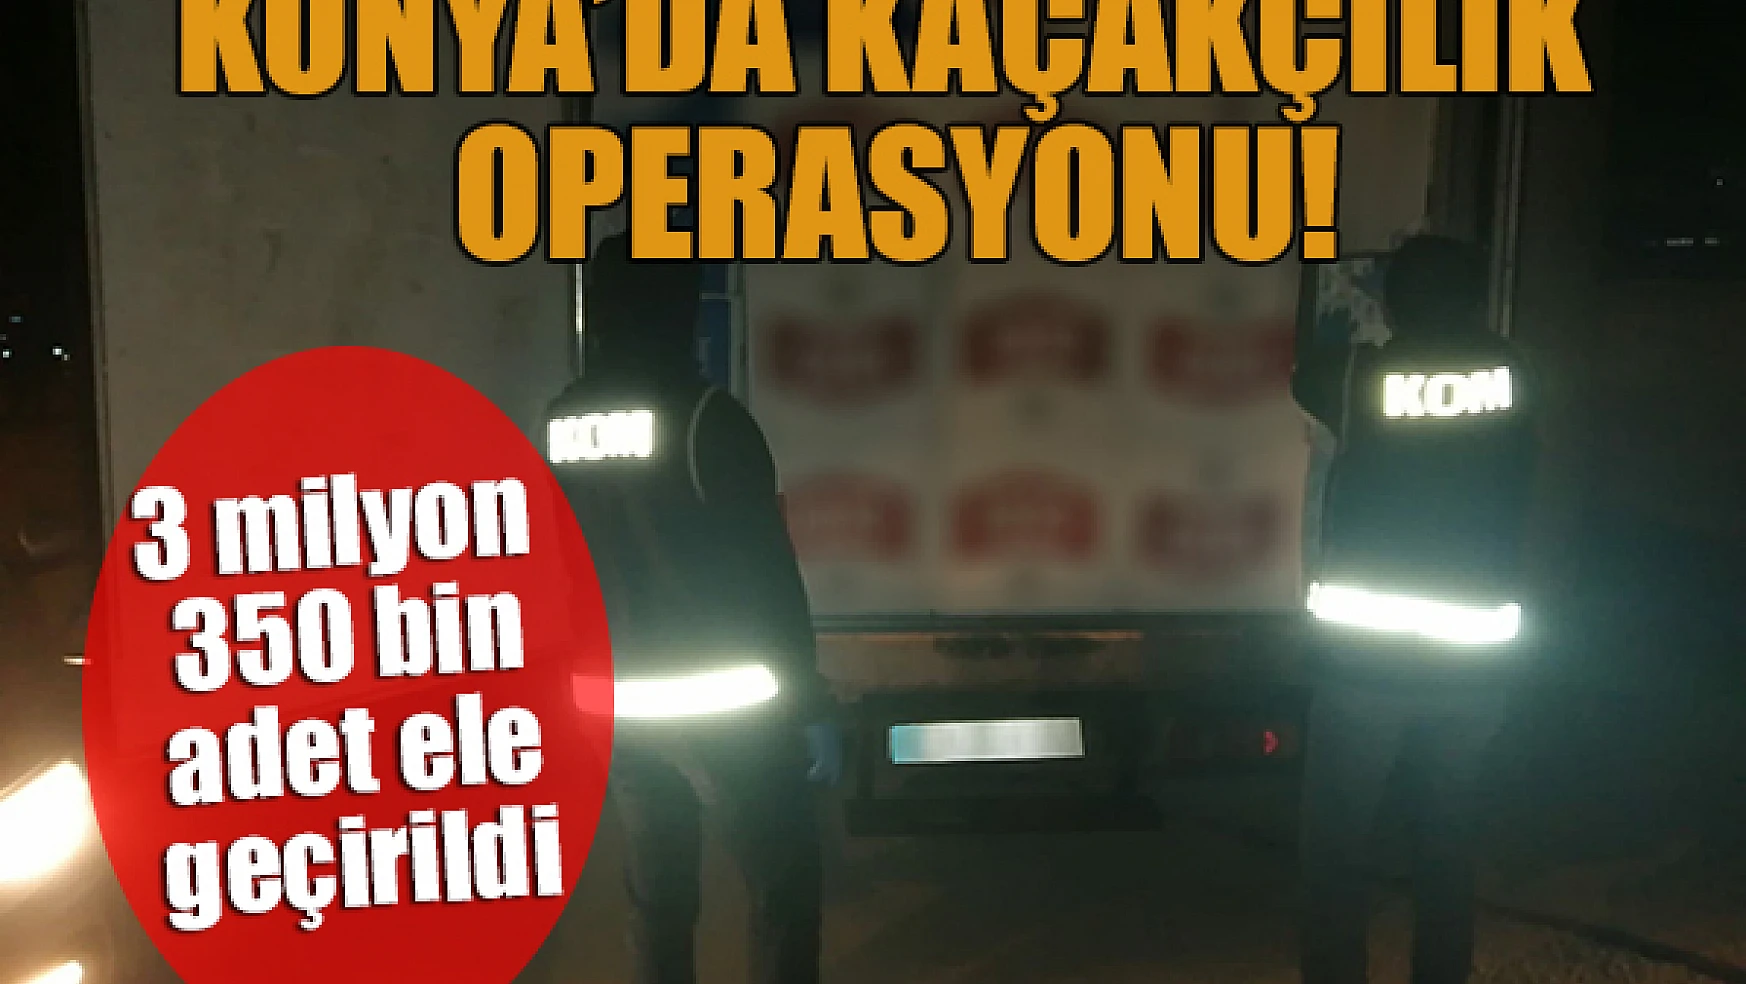 Konya'da kaçakçılık operasyonu: 3 milyon 350 bin adet ele geçrildi